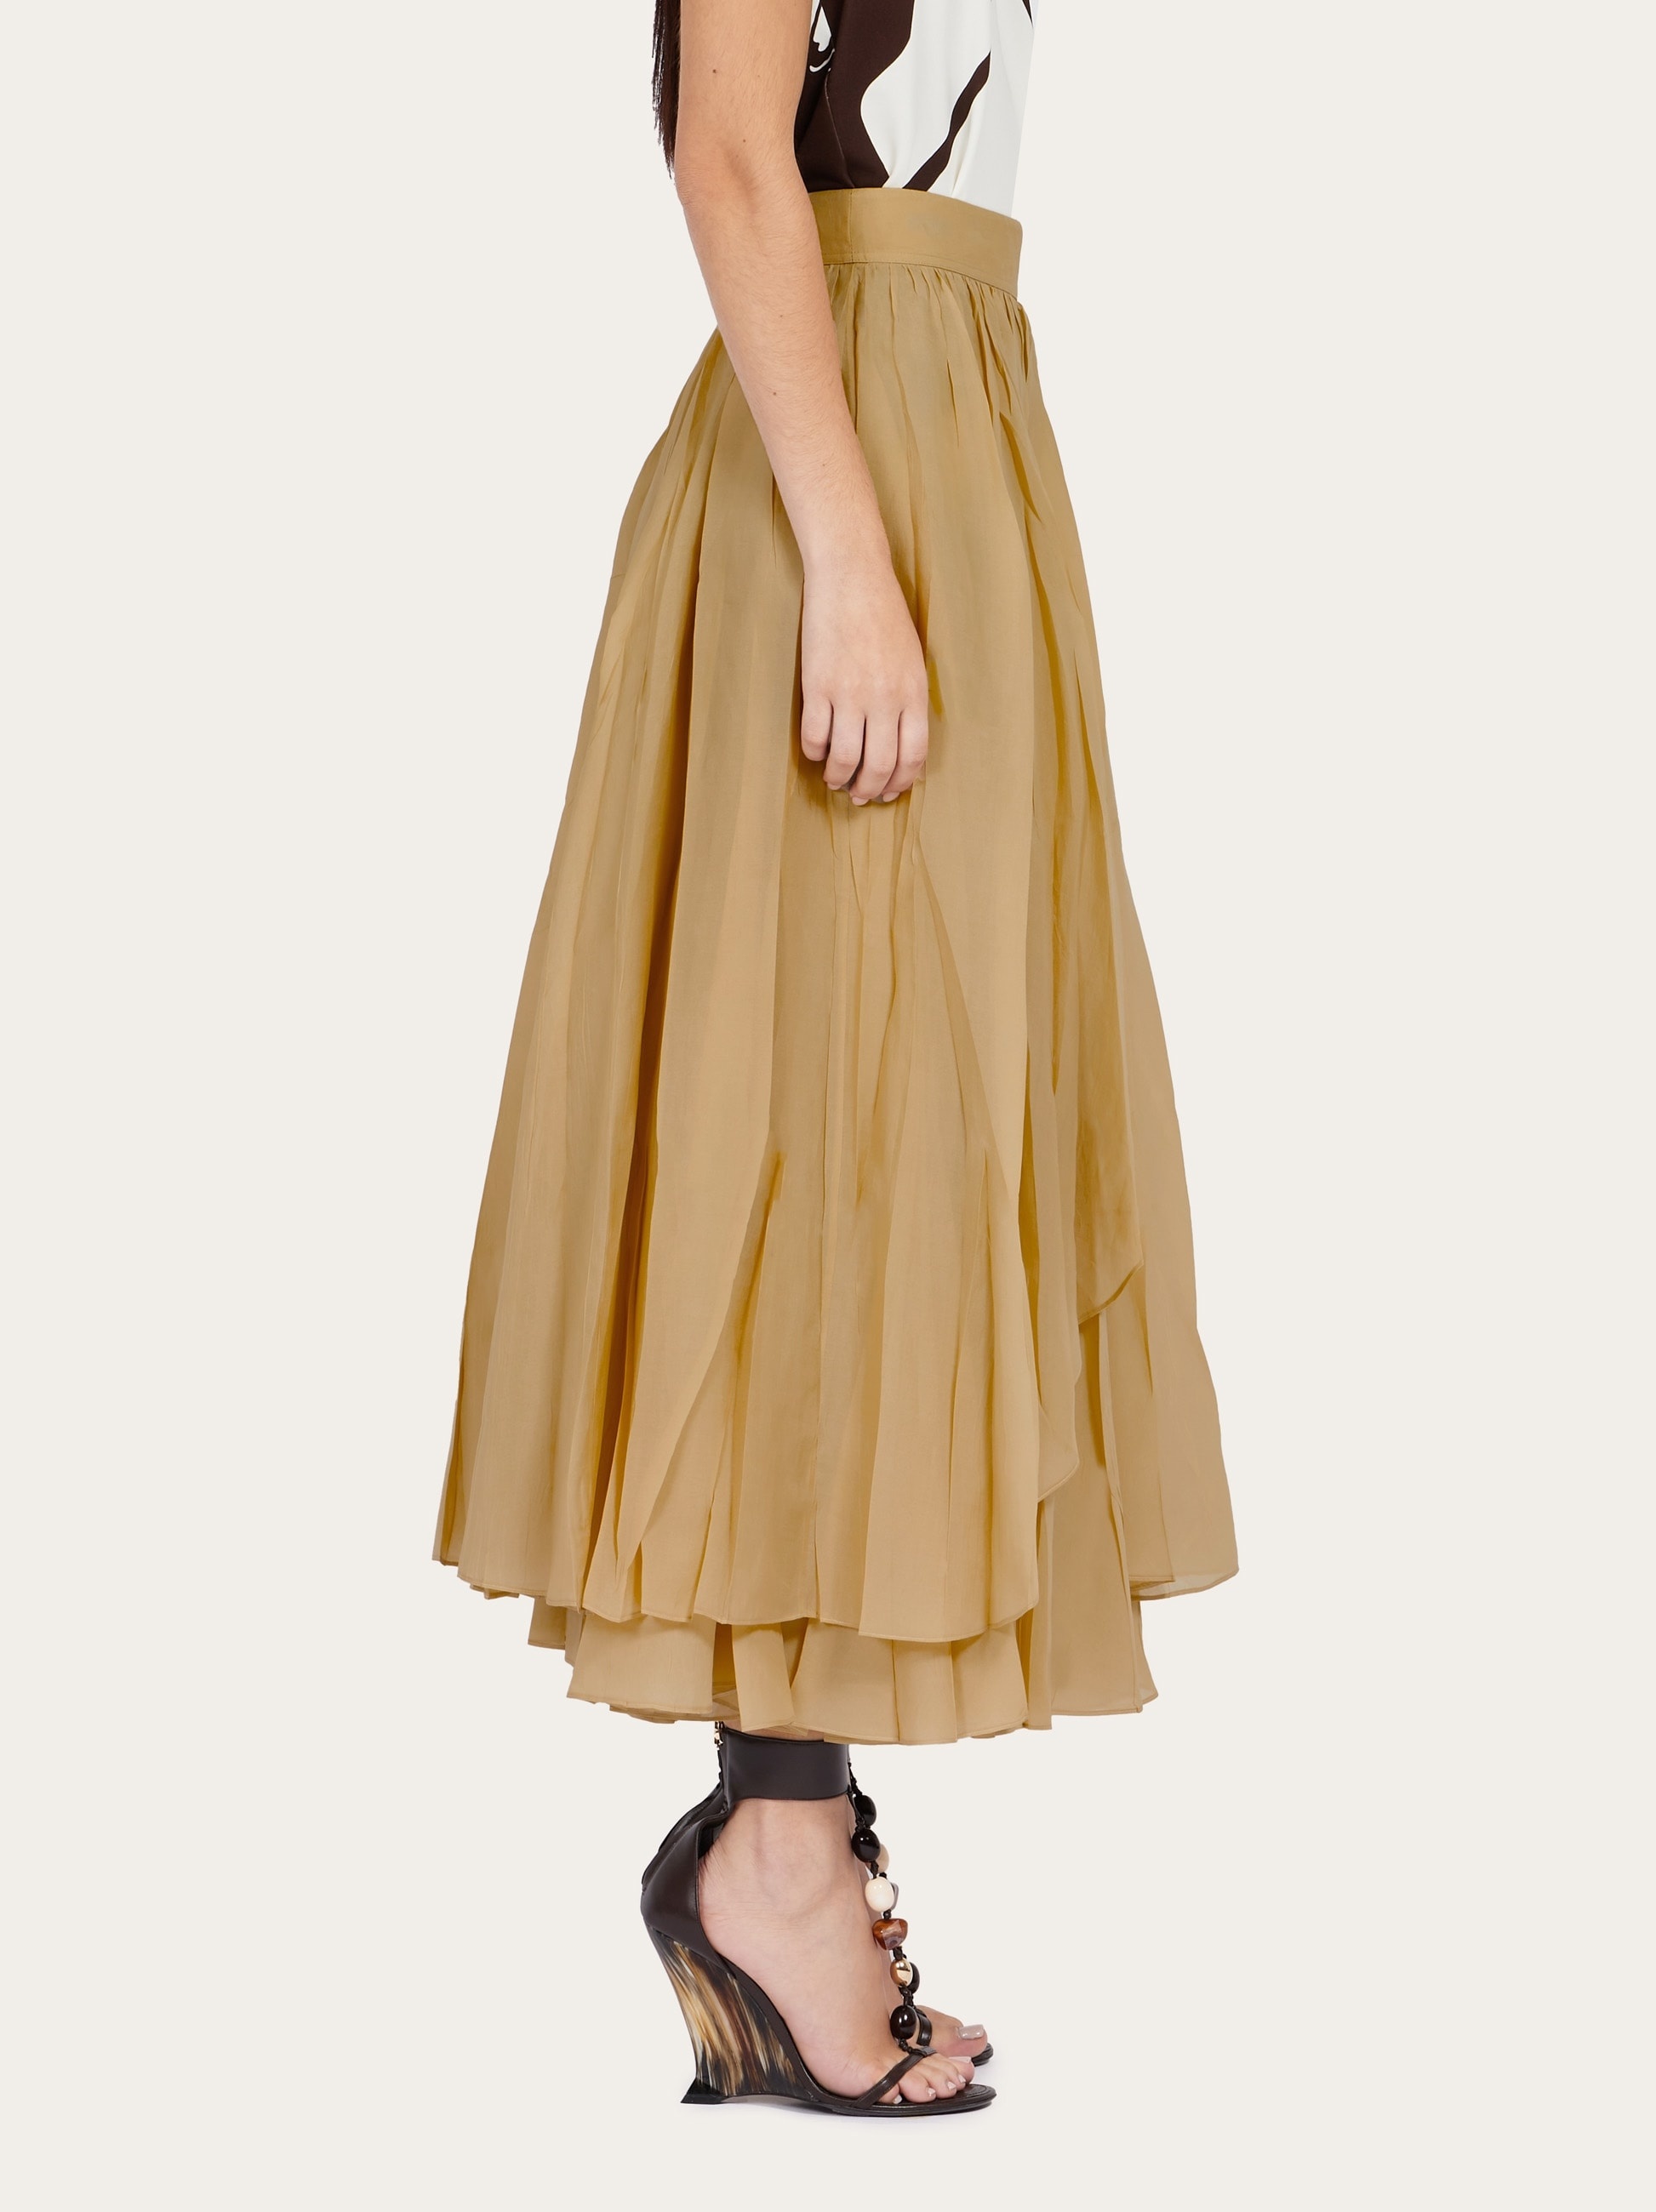 Layered skirt - 3